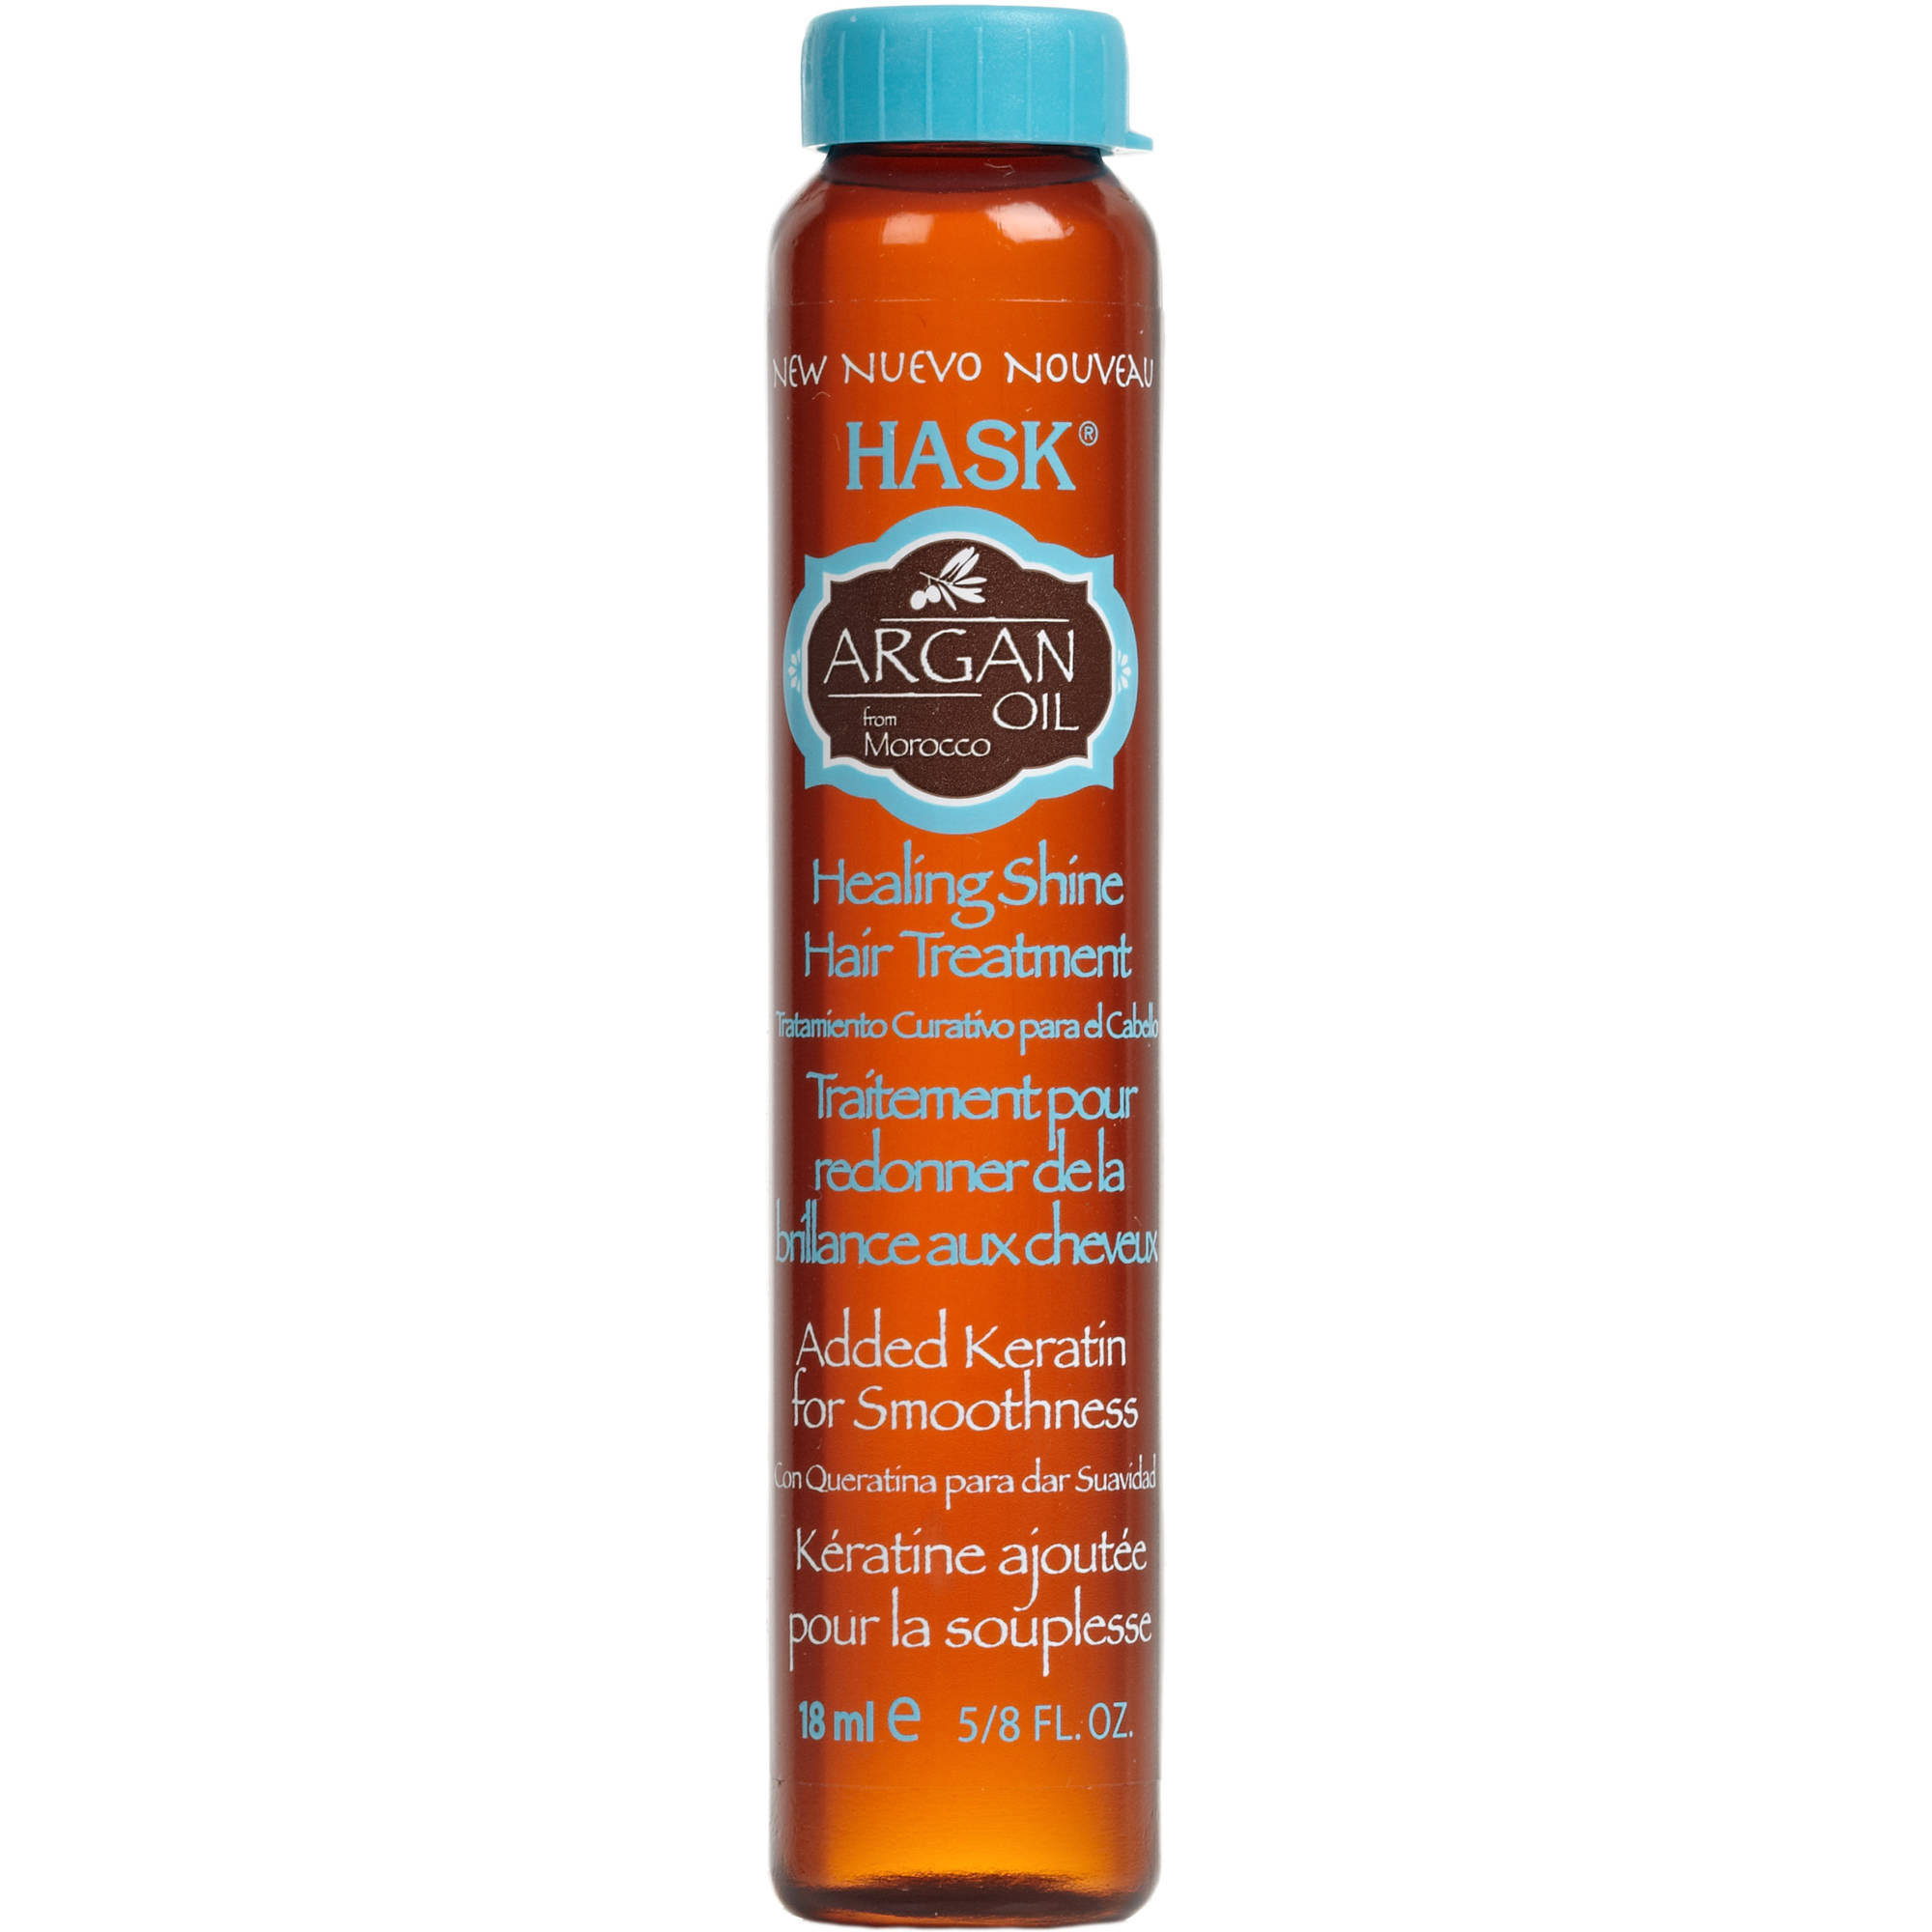 Hask Argan Oil Healing Shine Hair Treatment - 18ml